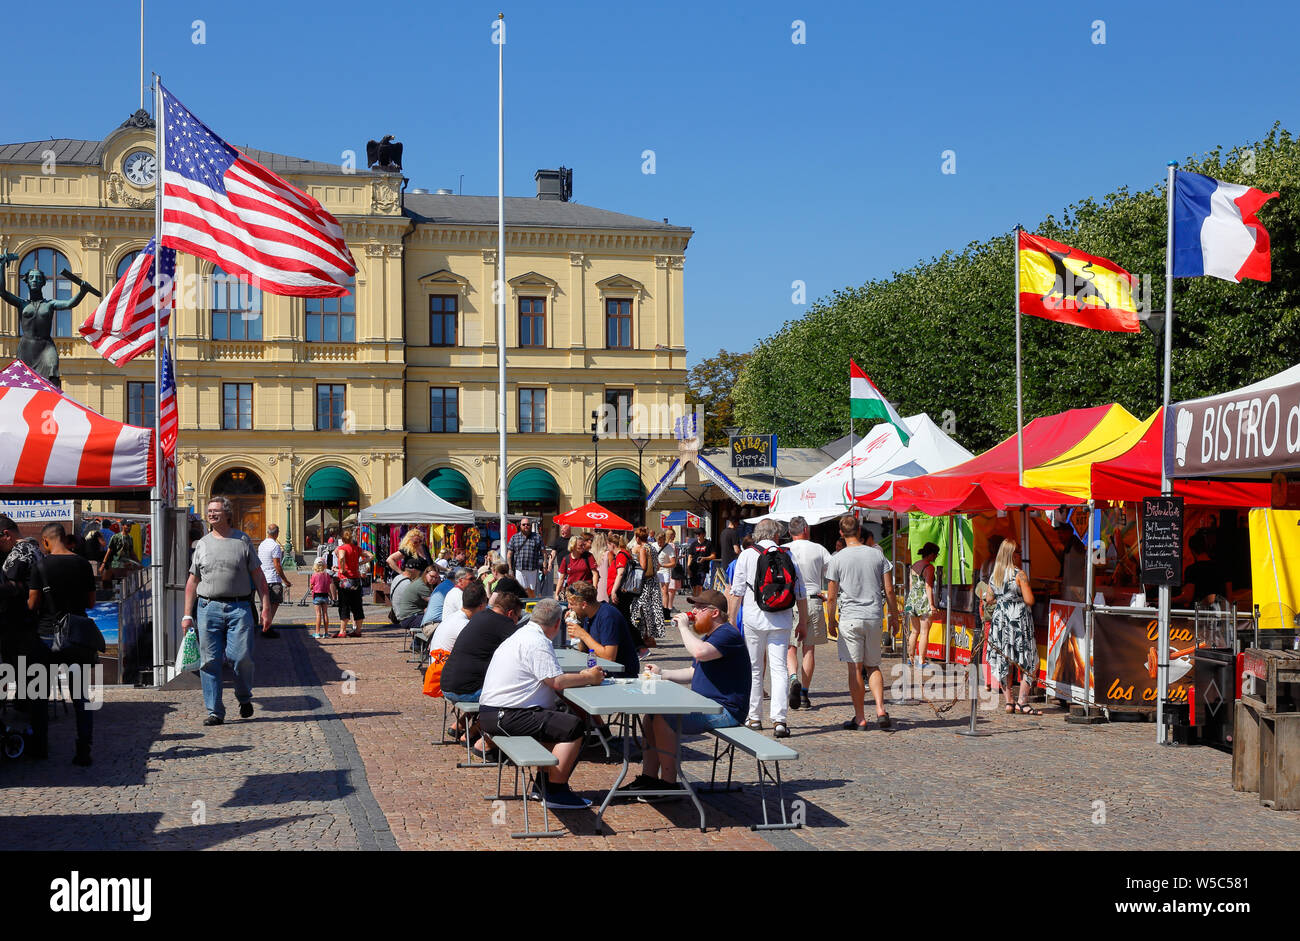 Karlstad, Svezia - 26 Luglio 2019: International Food evento con la rappresentanza dei countrys intorno al mondo ospitato presso la piazza della città. Foto Stock